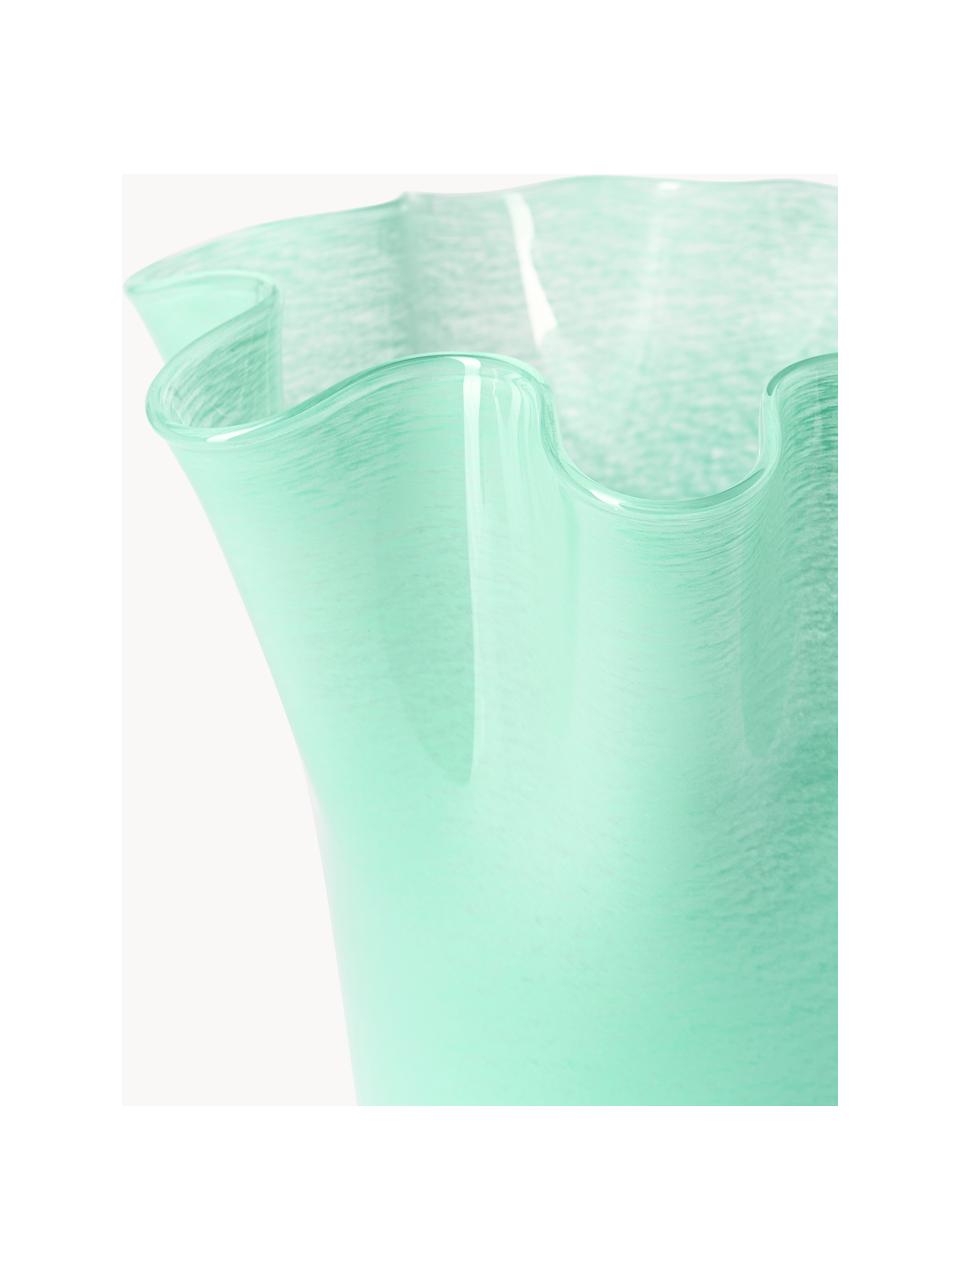 Ručně foukaná skleněná váza Inaya, Foukané sklo, Tyrkysová zelená, Ø 29 cm, V 31 cm